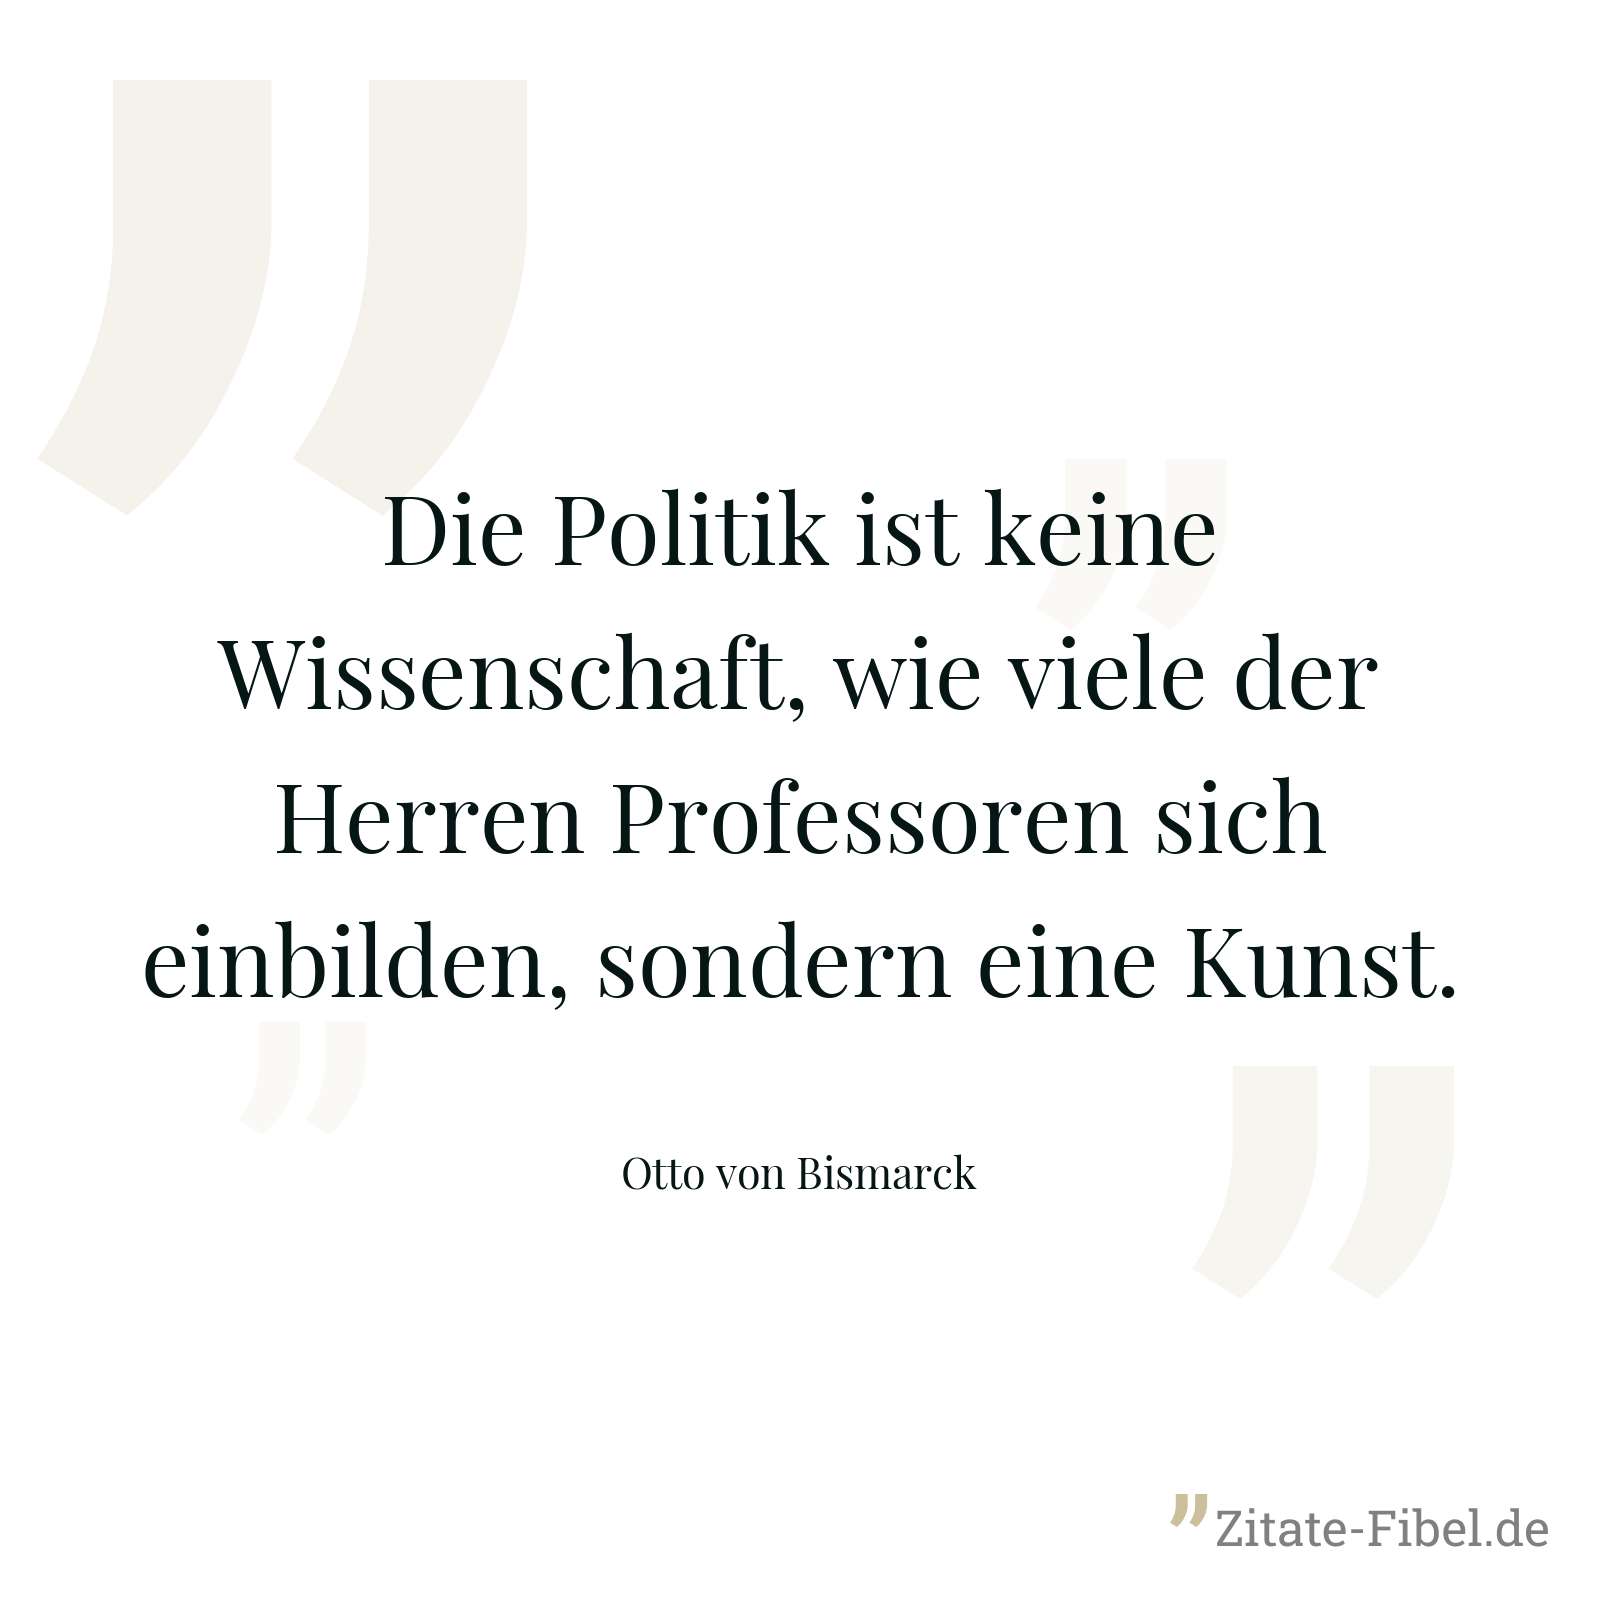 Die Politik ist keine Wissenschaft, wie viele der Herren Professoren sich einbilden, sondern eine Kunst. - Otto von Bismarck